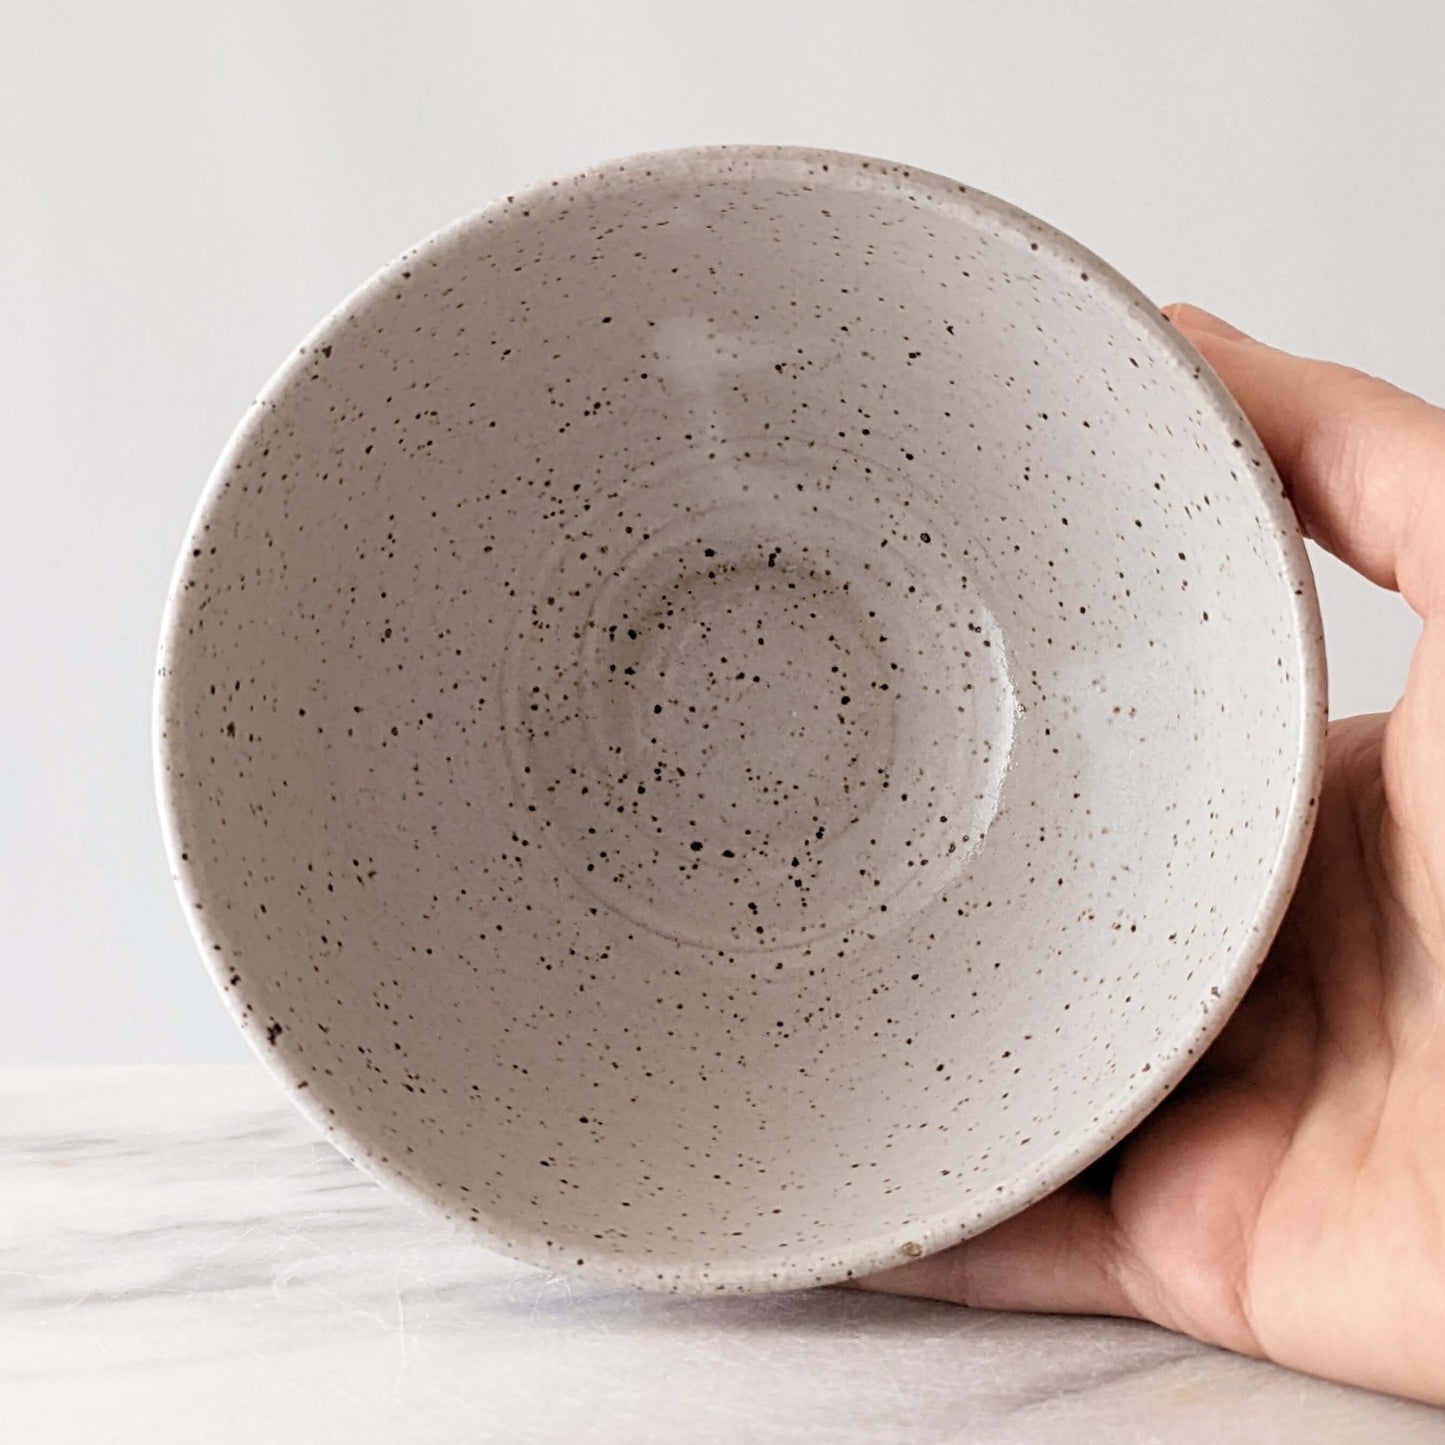 Pair of Grey Stoneware Bowls